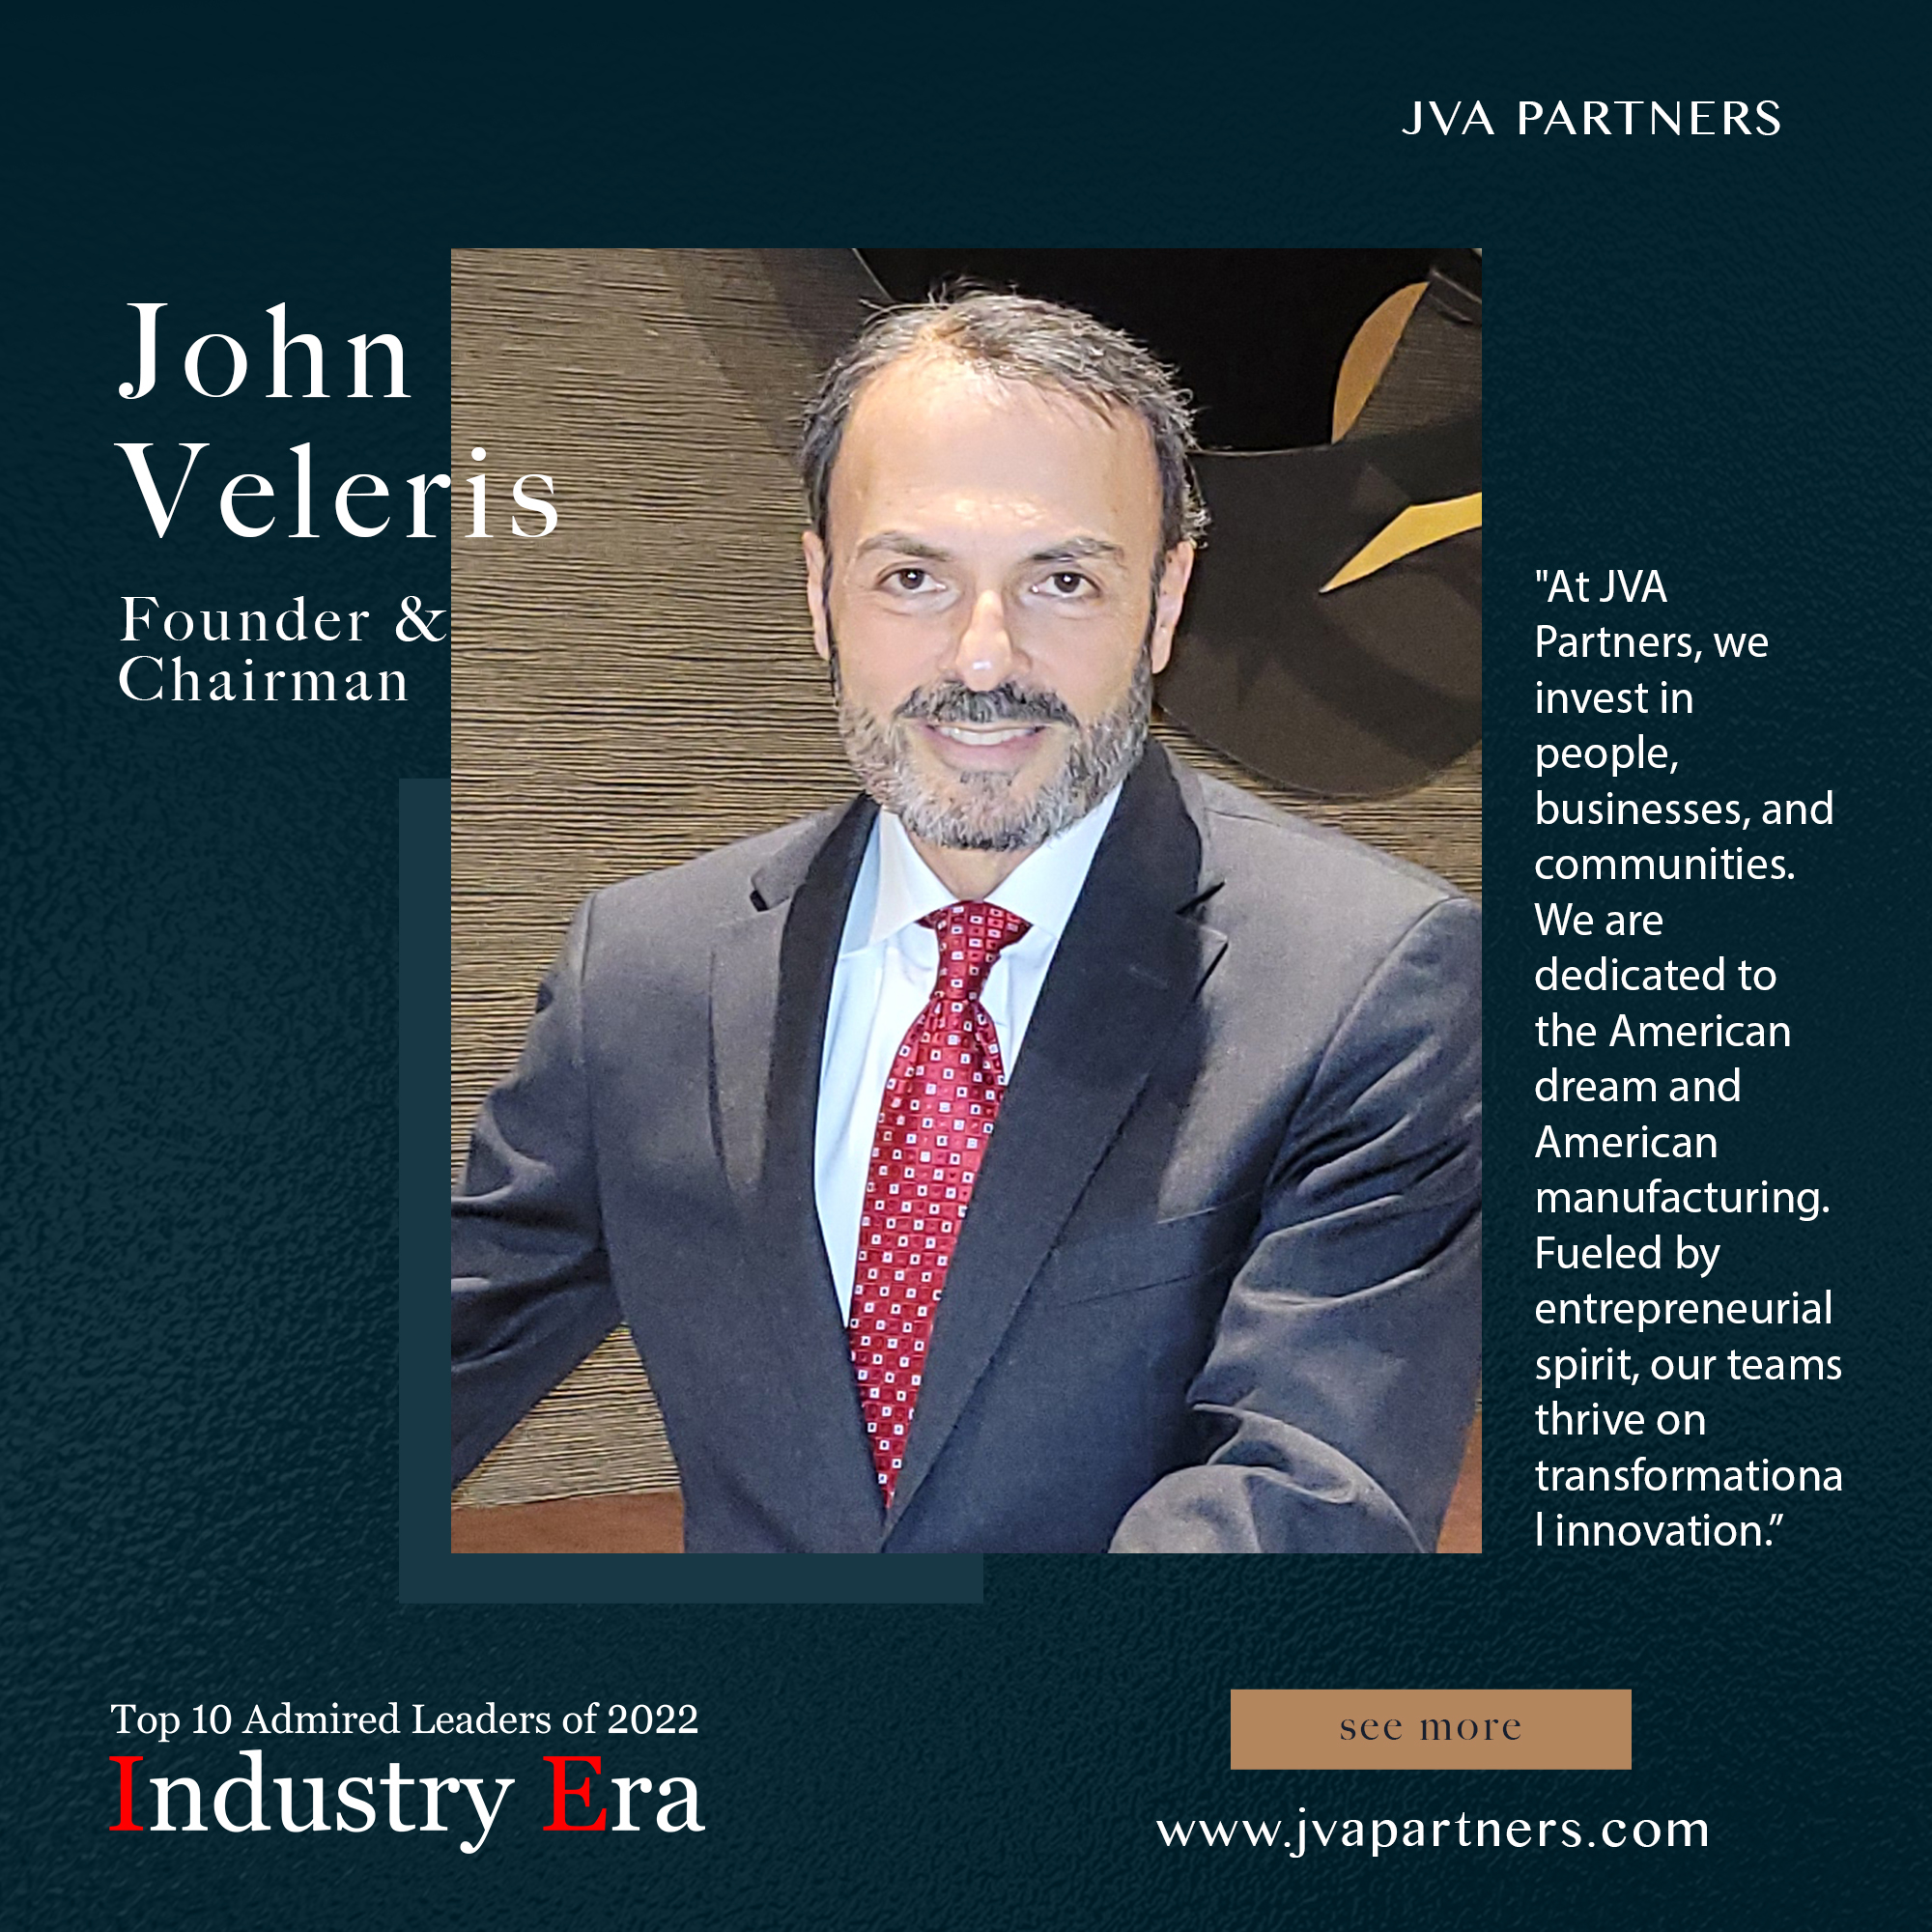 John Veleris, Founder & Chairman of JVA Partners, Top 10 Admired